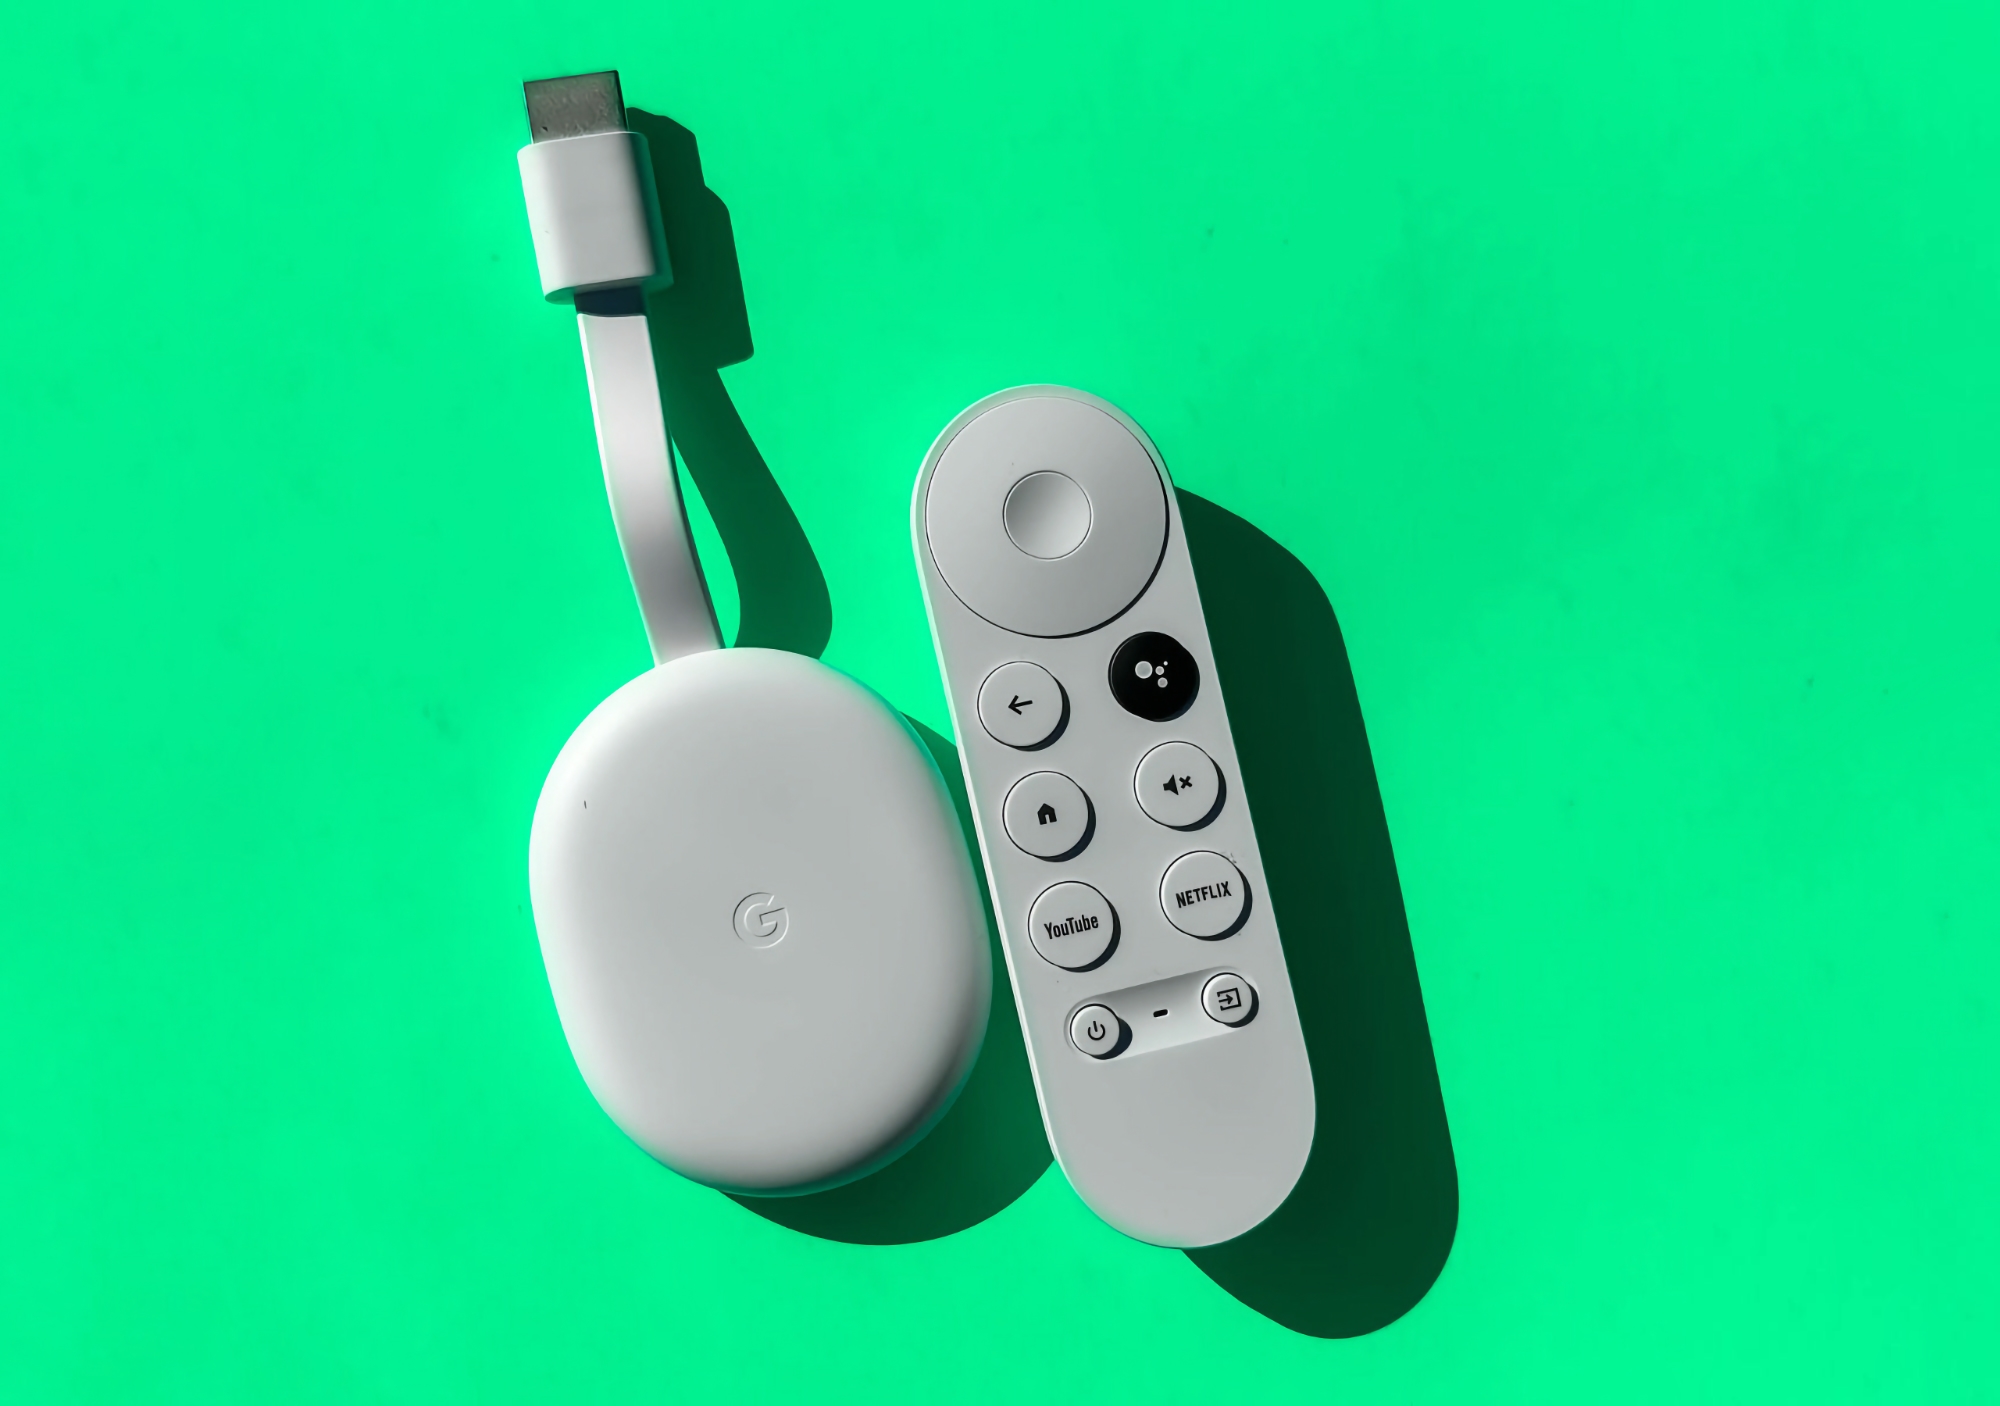 Chromecast con Google TV (4K) è disponibile su Amazon con uno sconto di 12 dollari